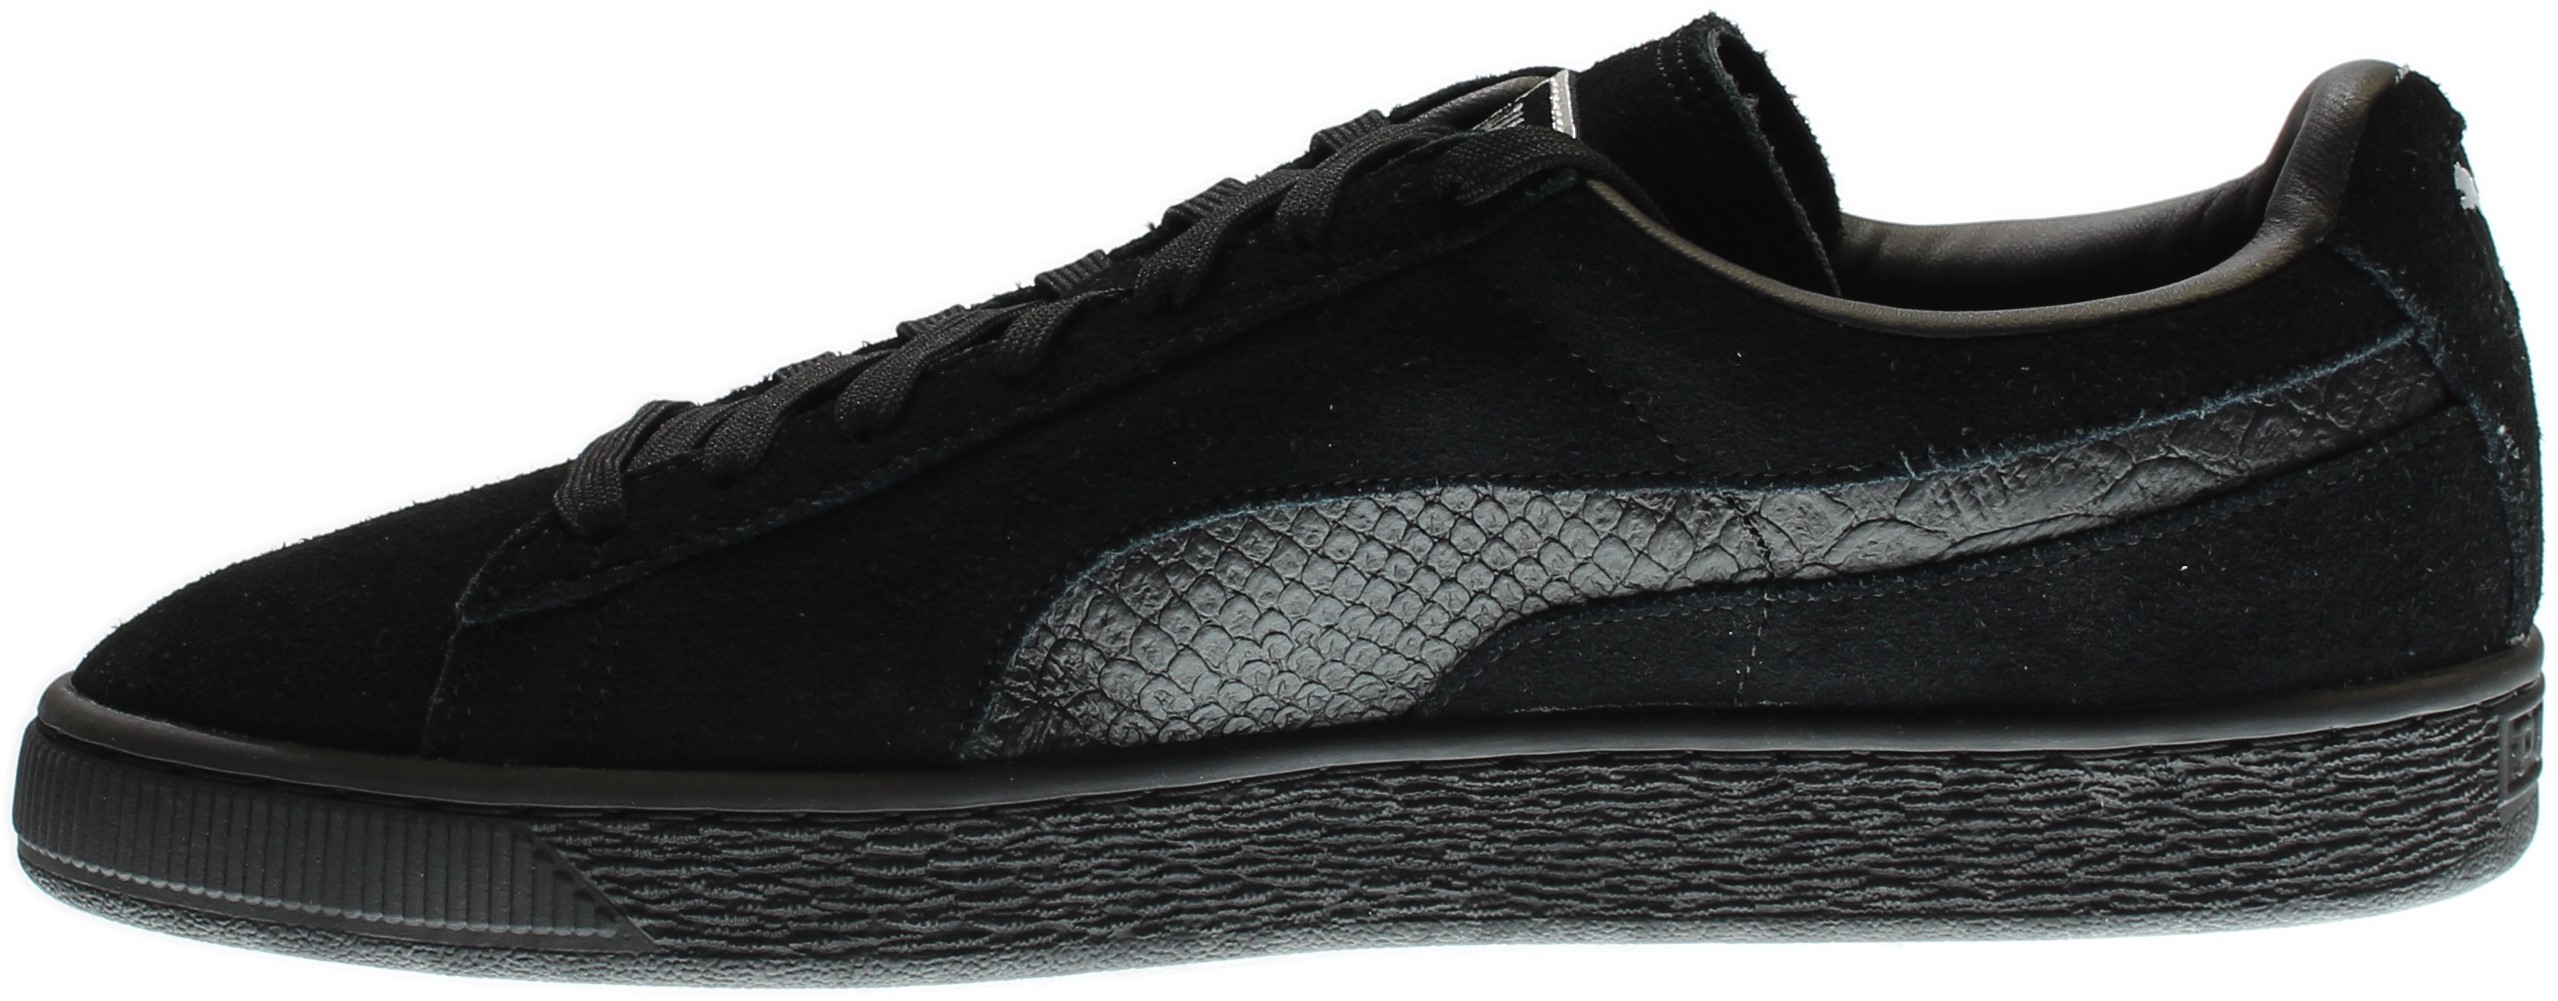 PUMA 363164-06 : Men's Suede Classic Mono Reptile Fashion Sneaker, Black (Puma Black-puma Silv, 9 D(M) US) - image 4 of 7